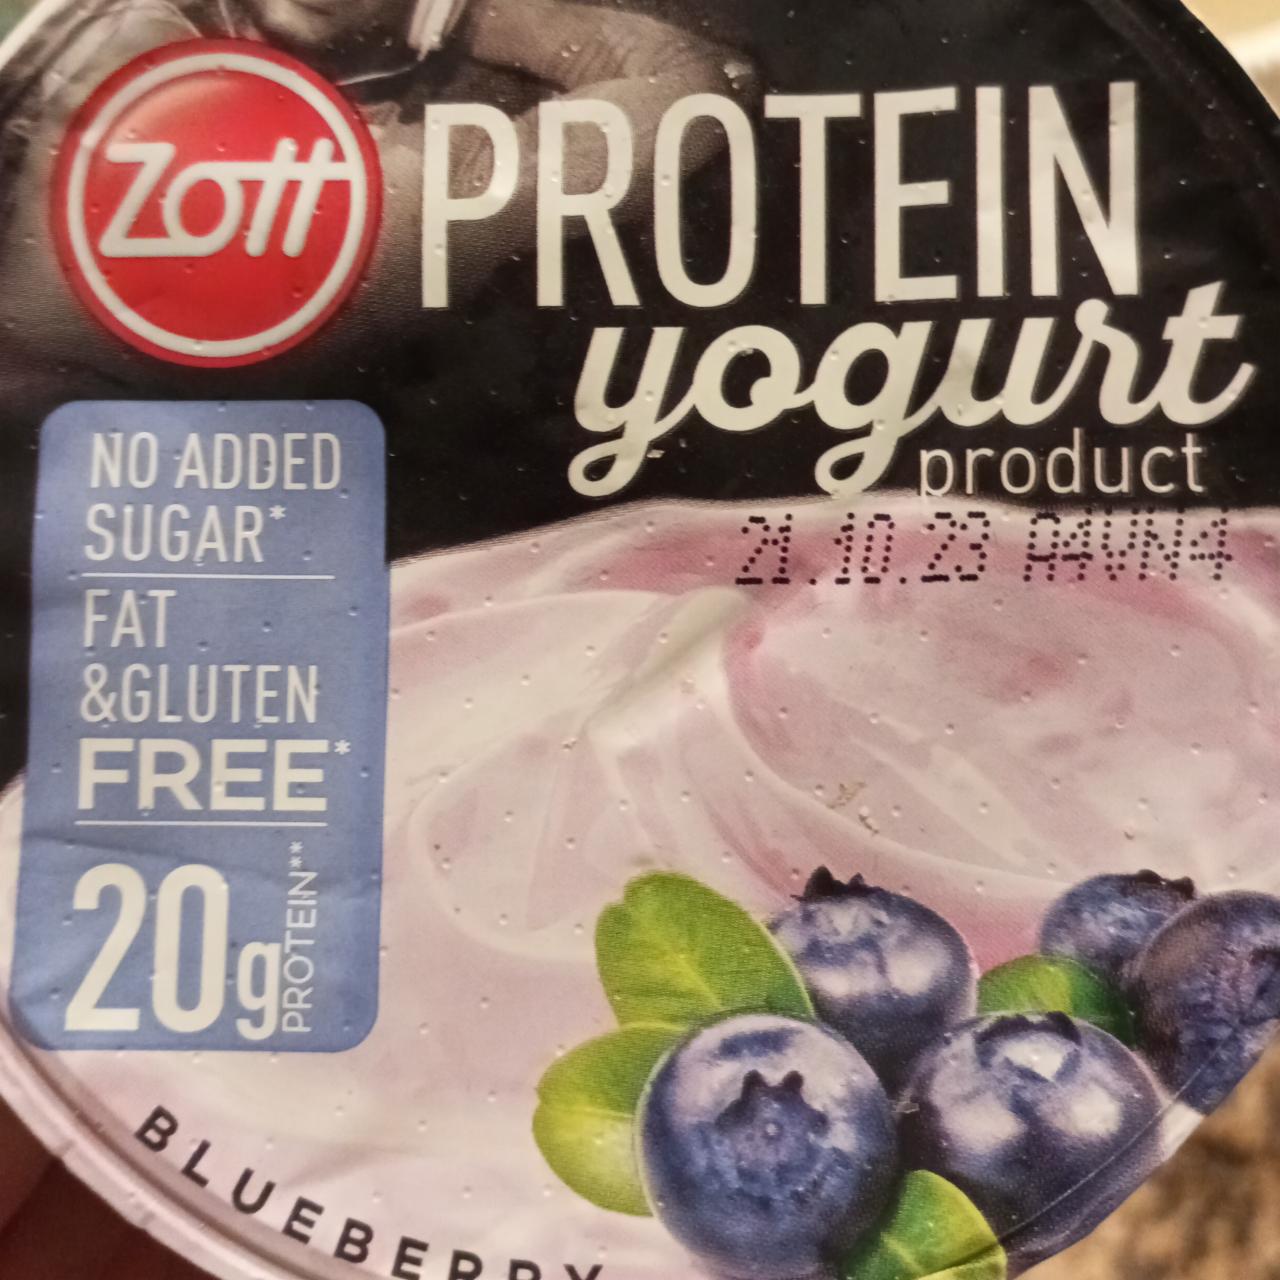 Fotografie - Protein yogurt product Blueberry No added sugar Fat & Gluten free Zott